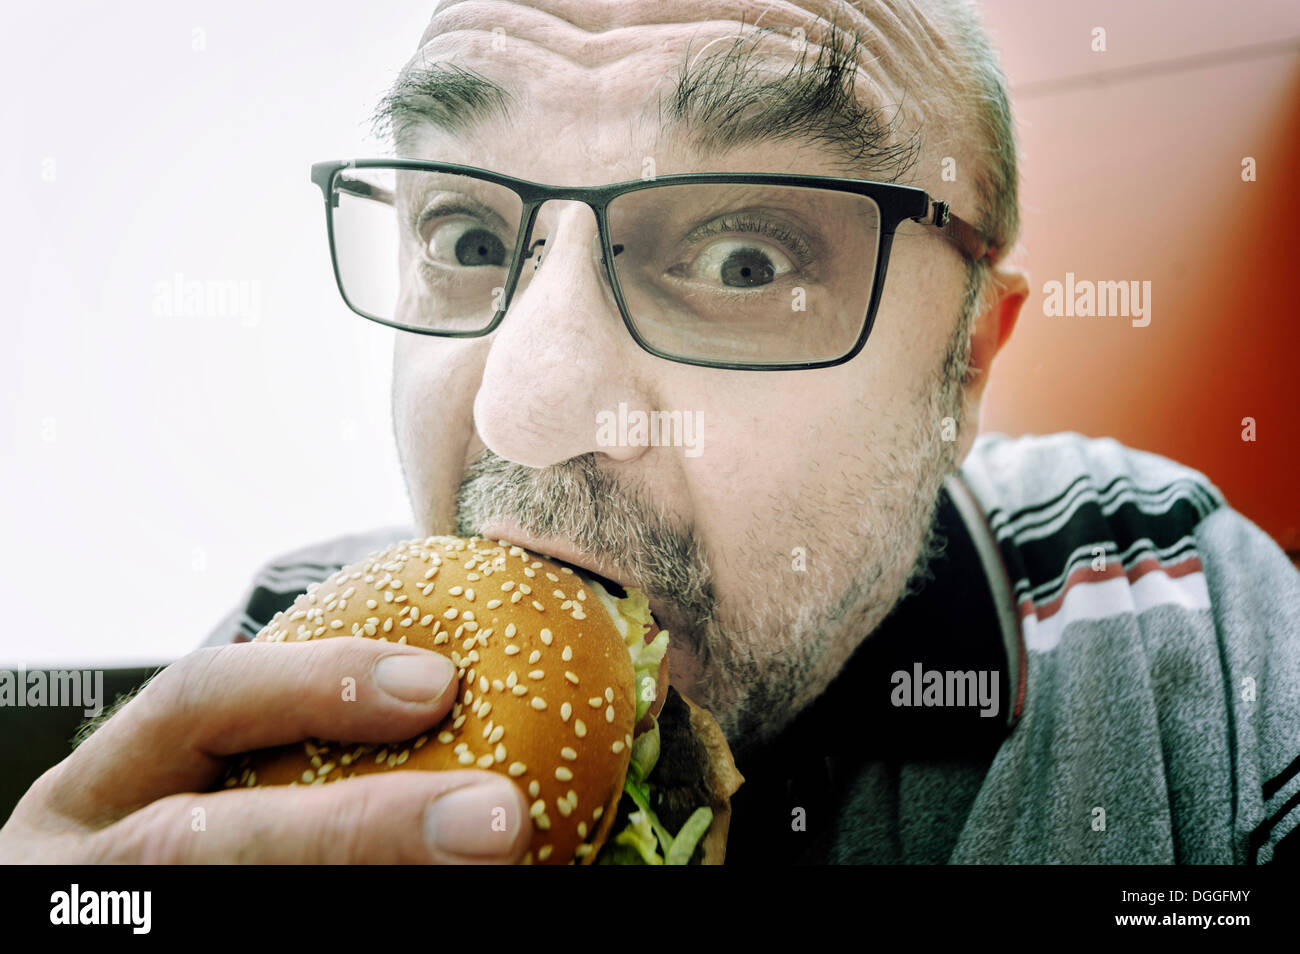 Man eating a hamburger, Germany Stock Photo